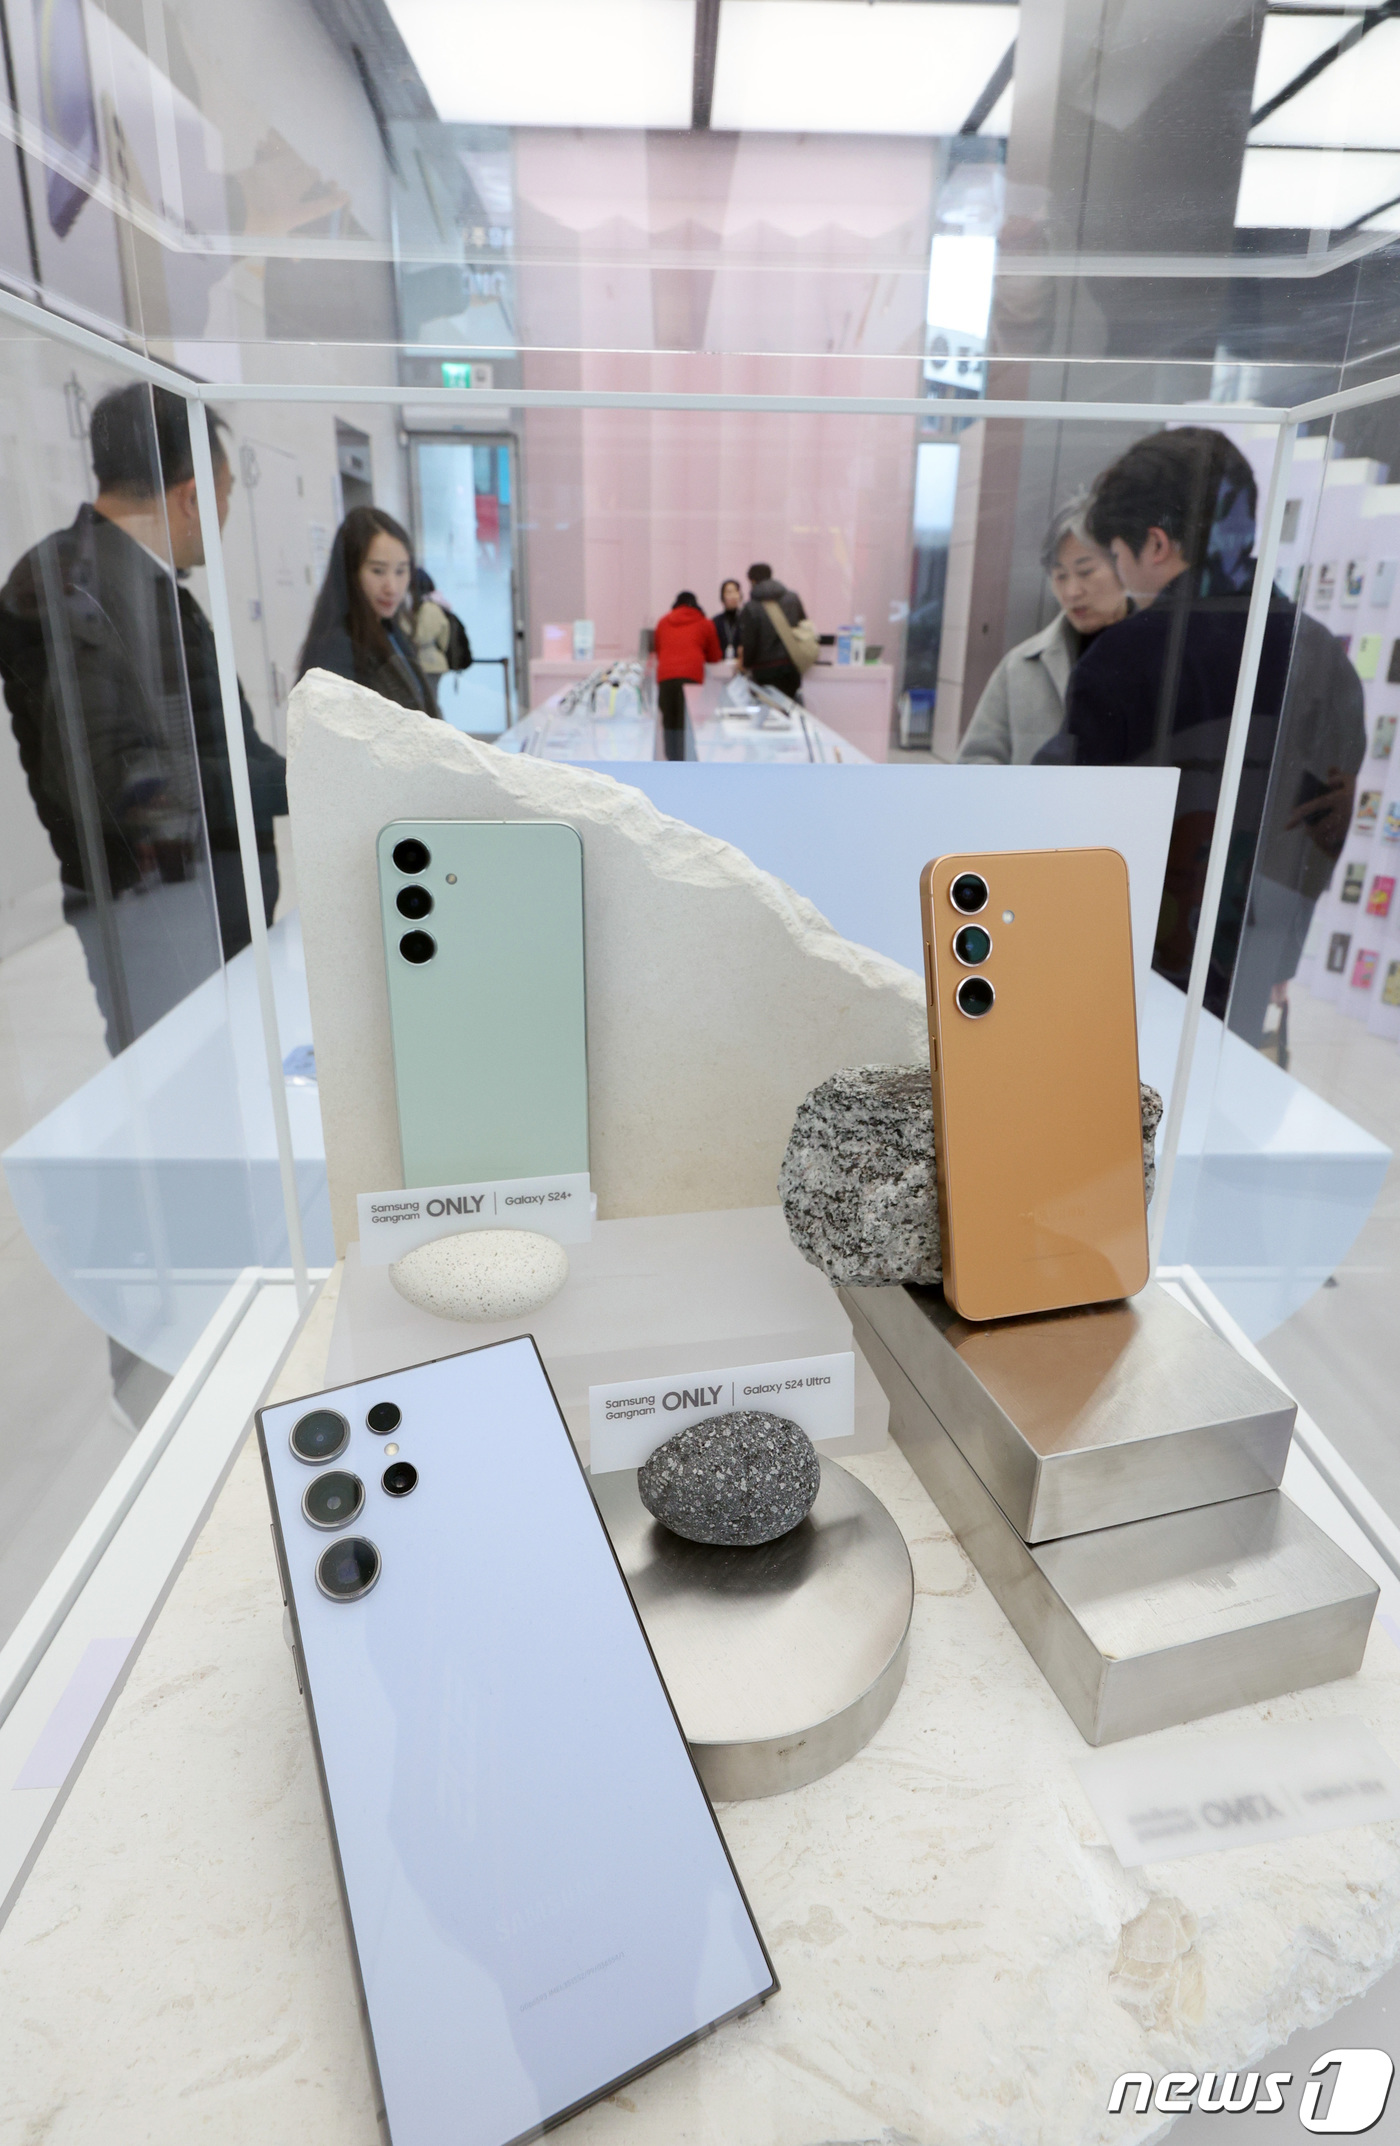 (서울=뉴스1) 신웅수 기자 = 28일 서울 강남구 삼성 강남 스토어에서 고객들이 삼성전자의 최신 플래그십 스마트폰 갤럭시S24 시리즈를 살펴보고 있다.갤럭시S24 시리즈가 공식 …